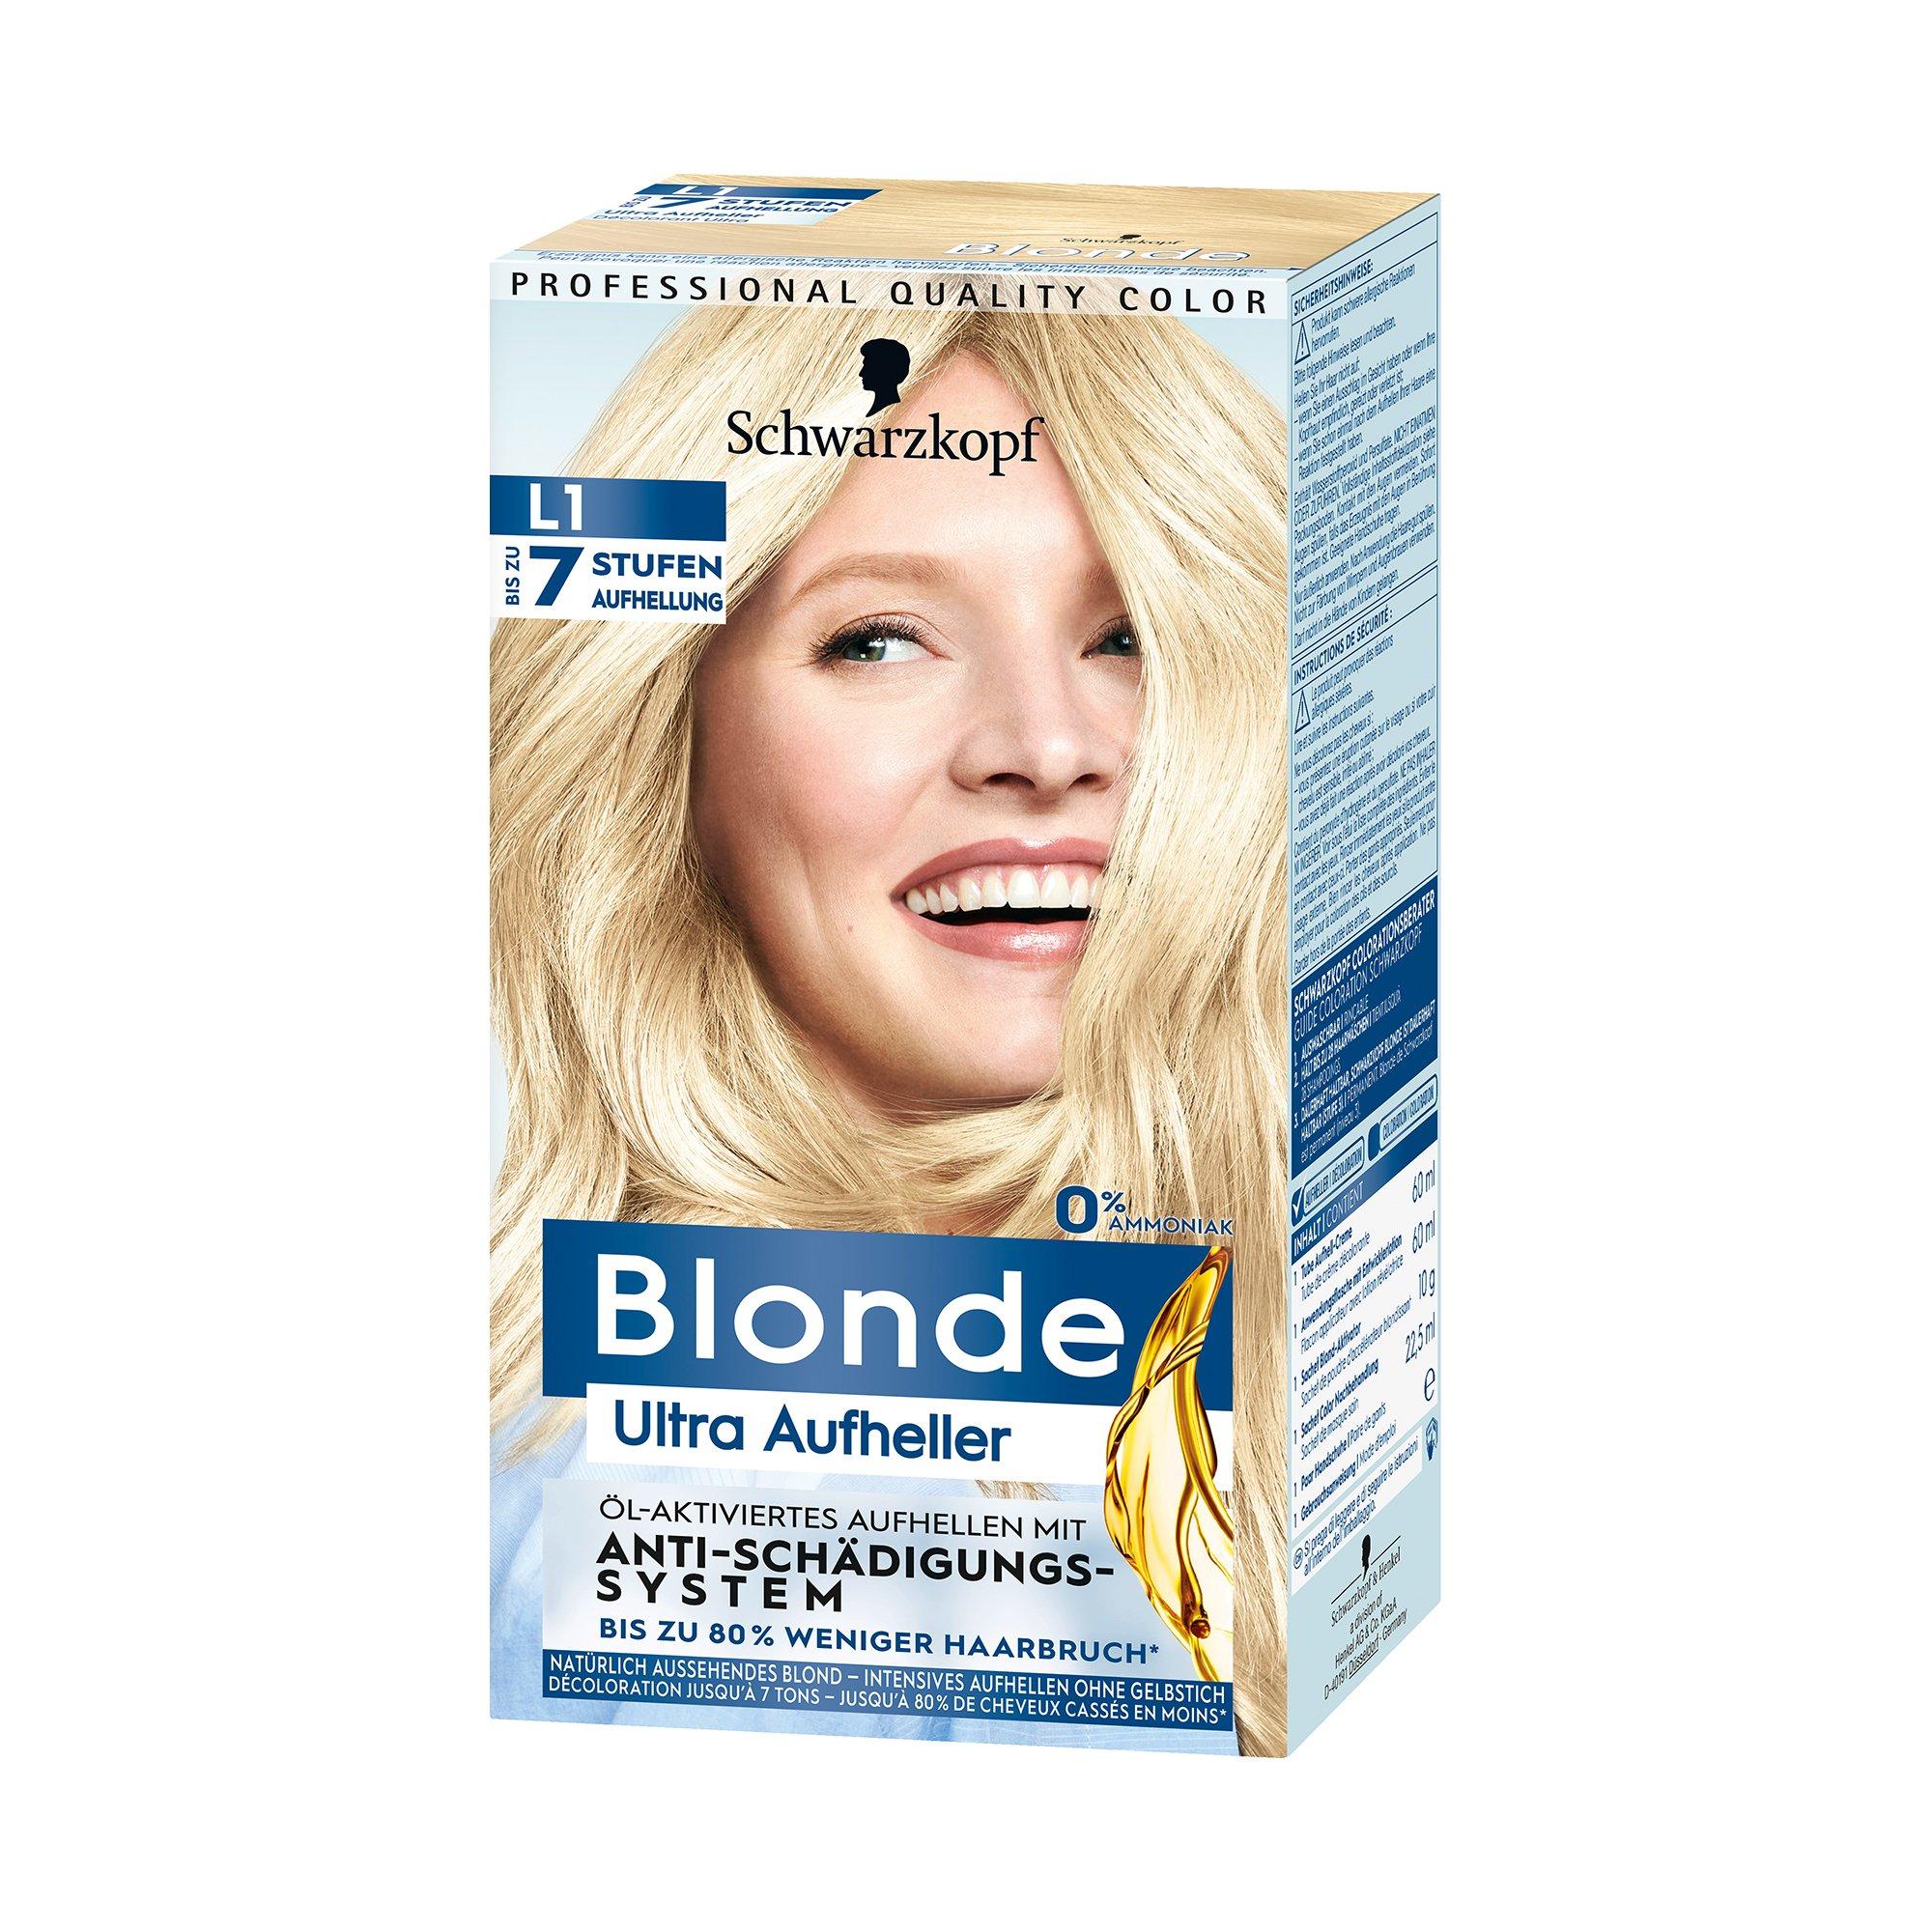 Image of Blonde Extrem Ultra Aufheller